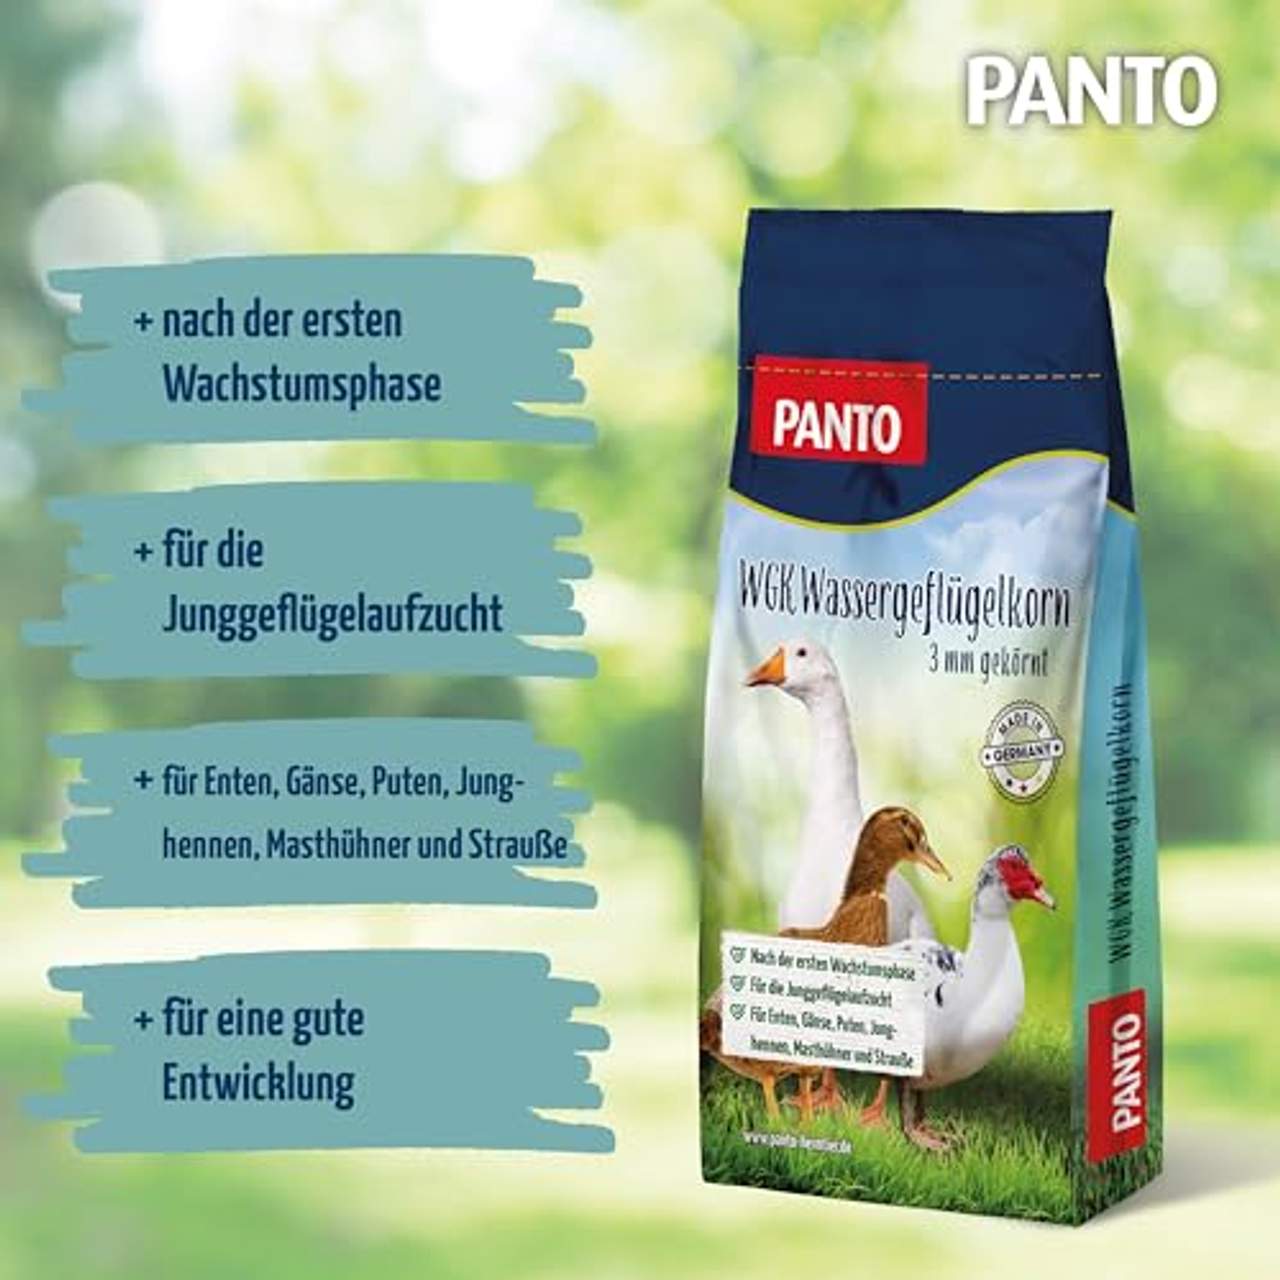 Panto WGK Wassergeflügelkorn 1er Pack